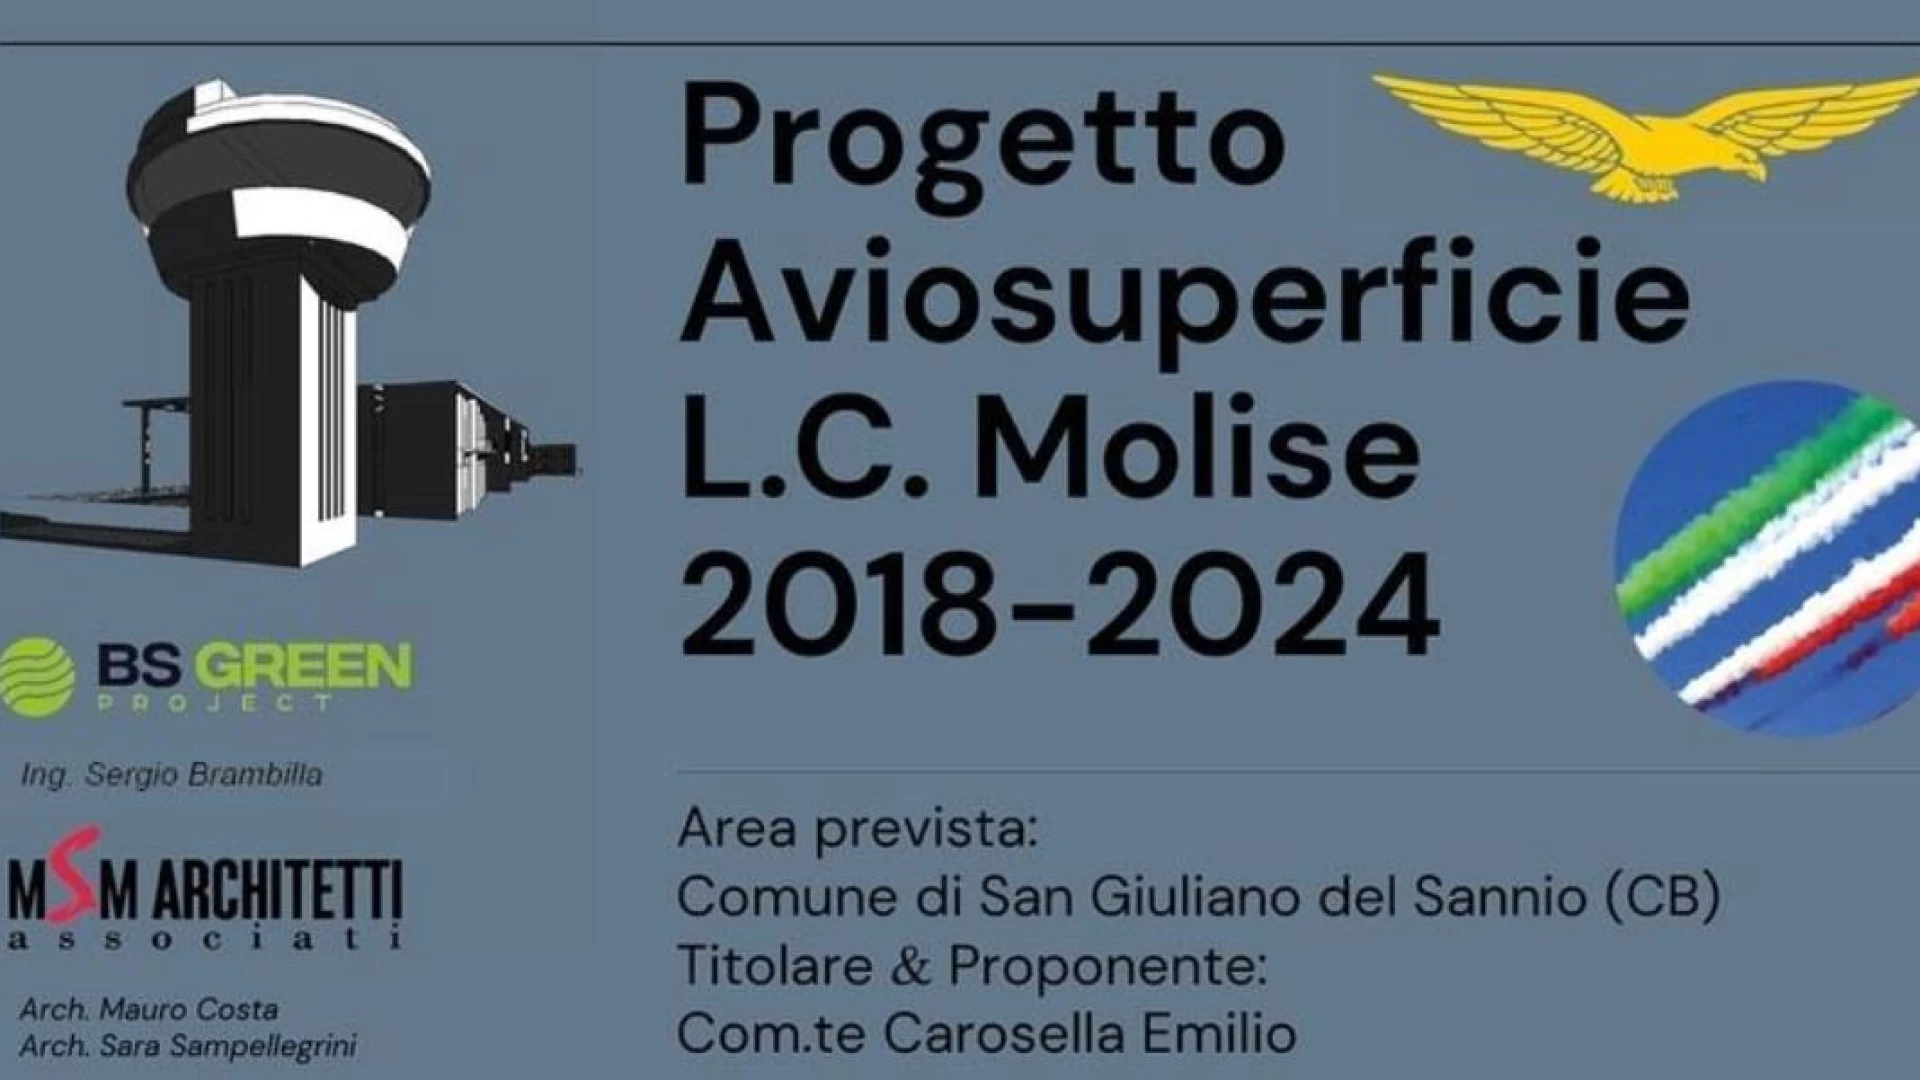 Progetto aviosuperficie del Molise, importante convegno in programma a Campobasso. Consulta il programma